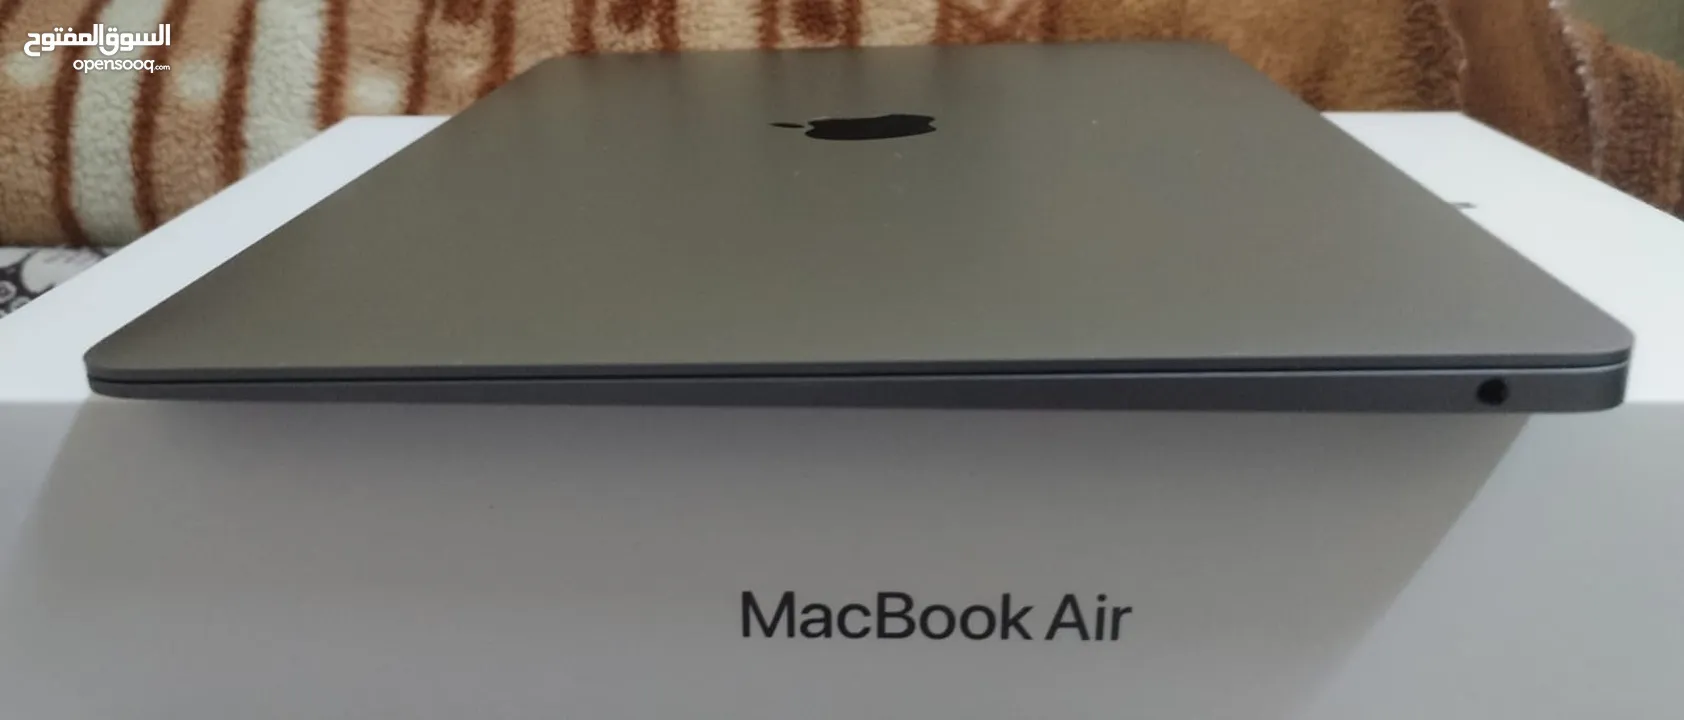 ماك بوك اير 2020 Macbook Air M1